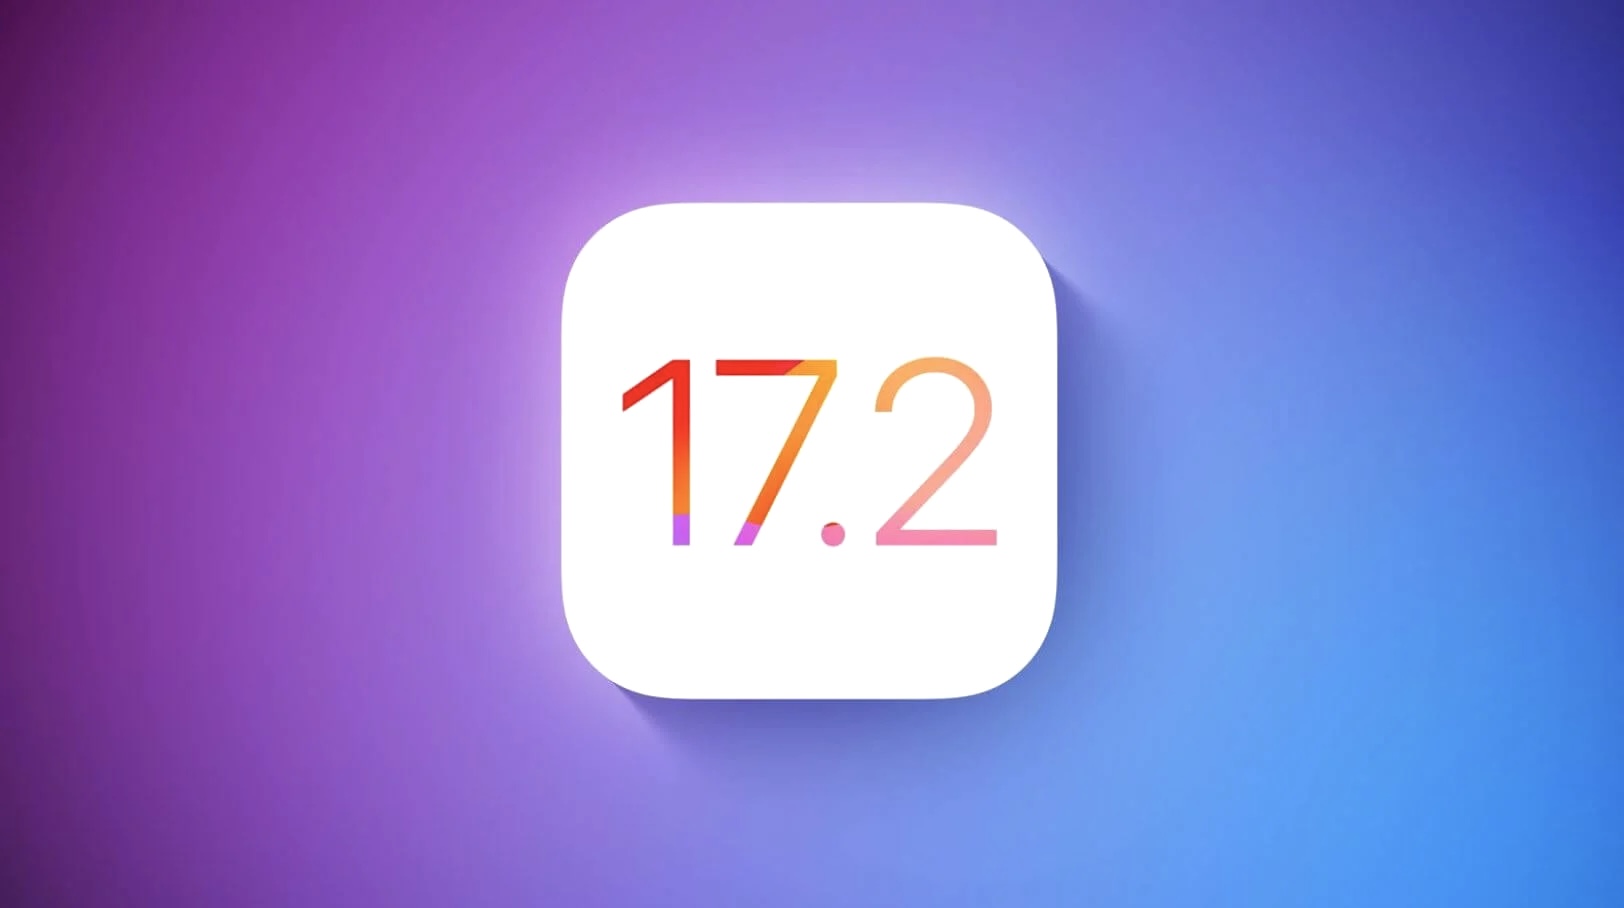 Вышла iOS 17.2 с новым приложением Дневник